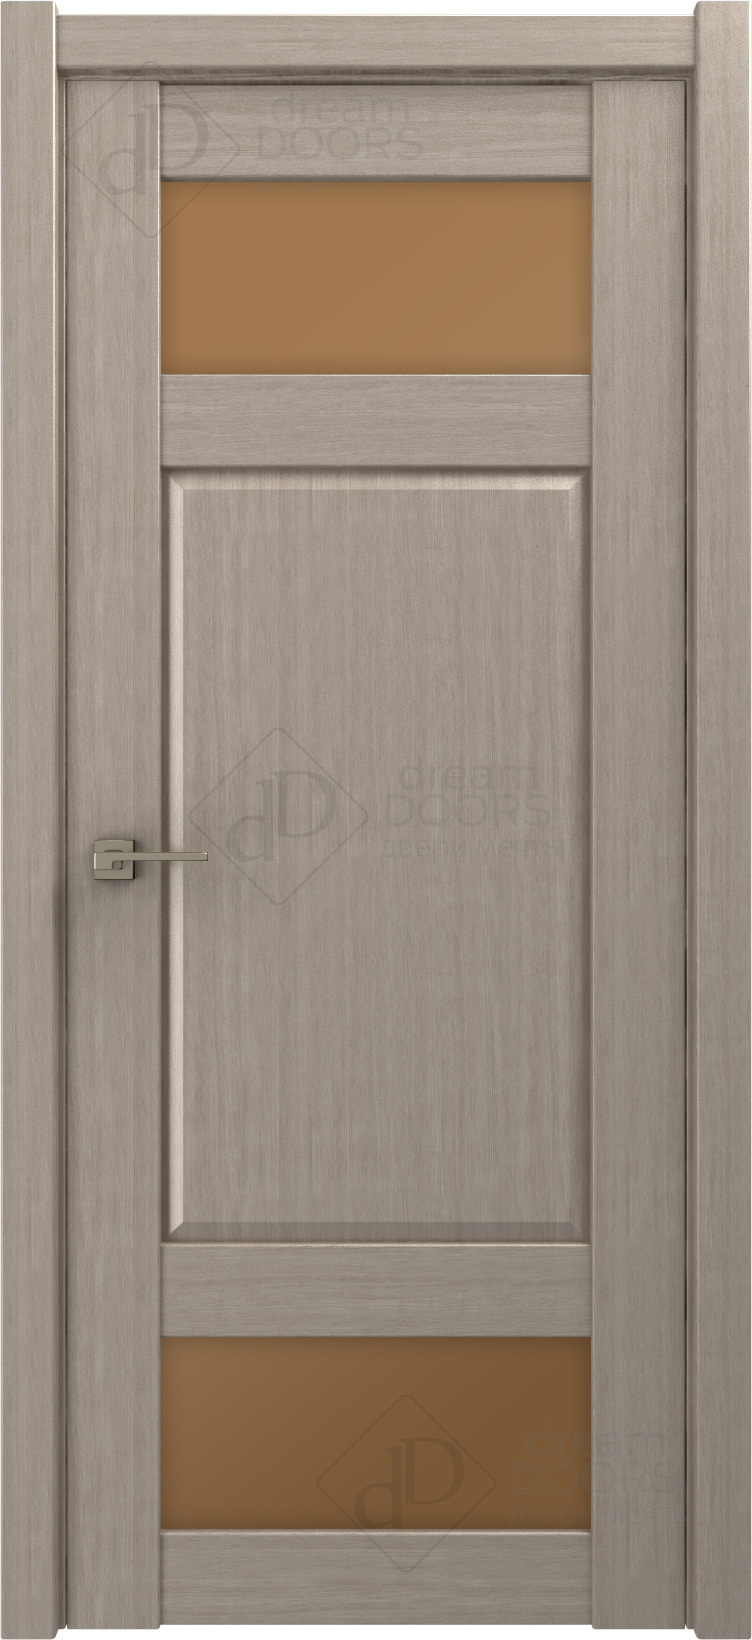 Dream Doors Межкомнатная дверь P17, арт. 18227 - фото №1